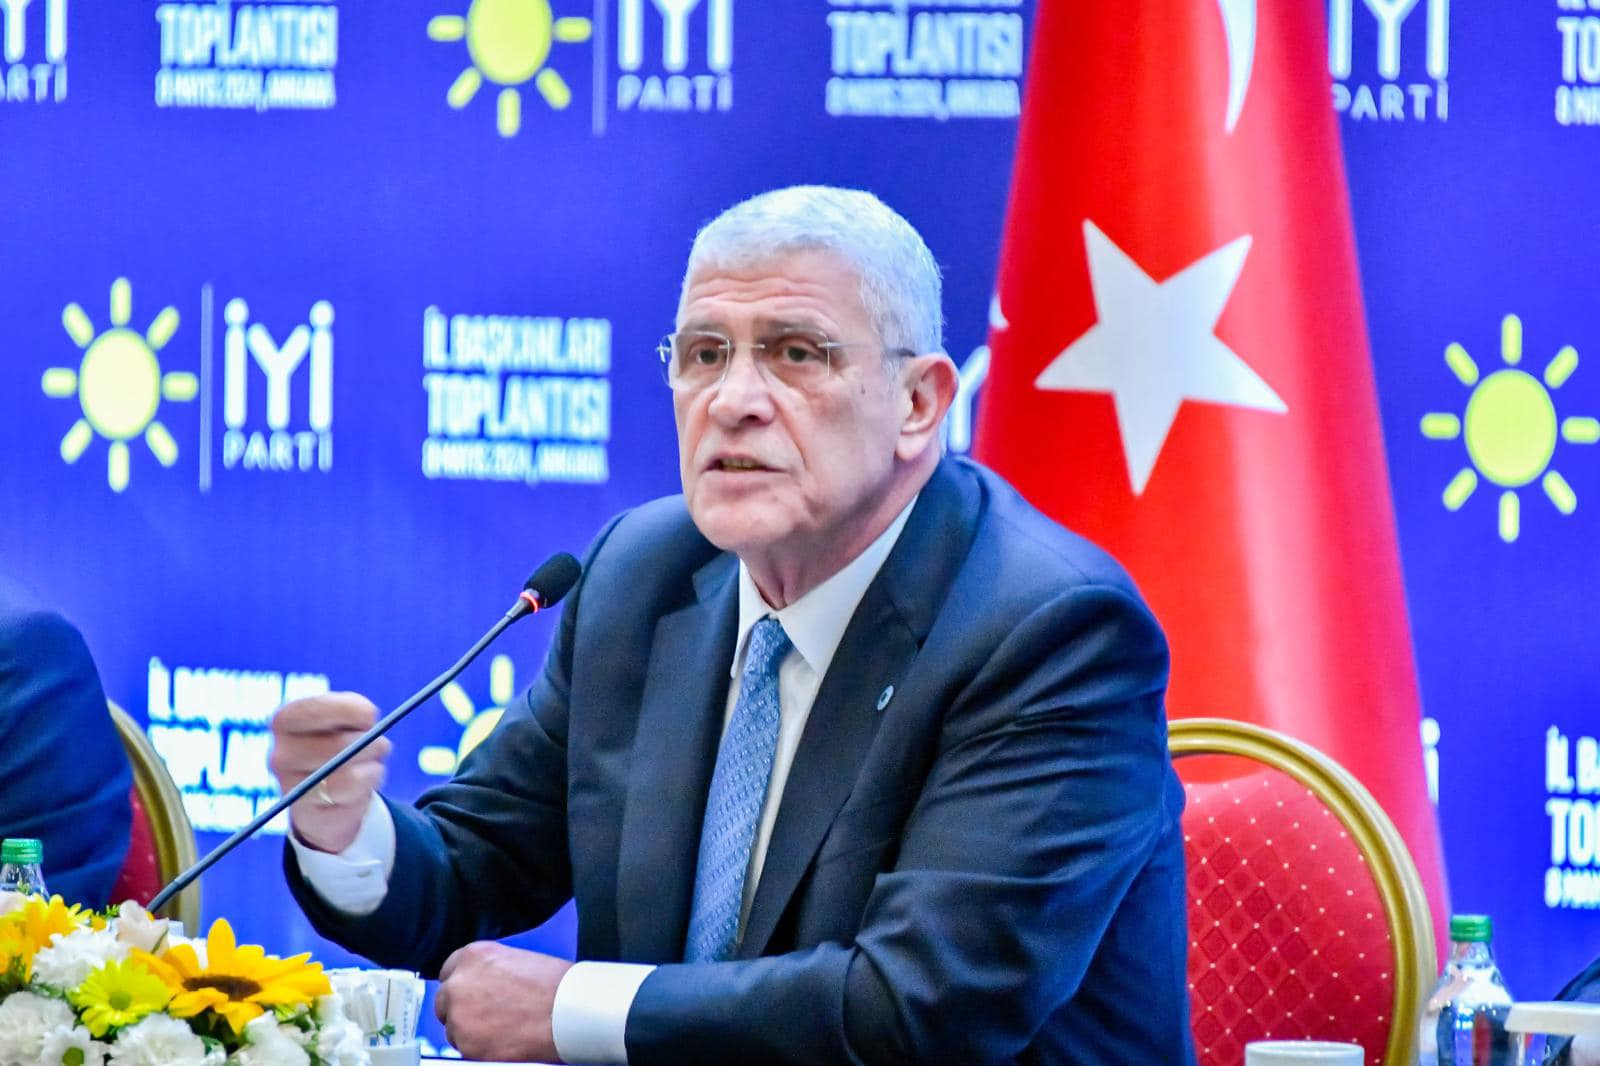 İYİ Parti Genel Başkanı Müsavat Dervişoğlu, Kamuda Tasarruf Paketini Sorguladı